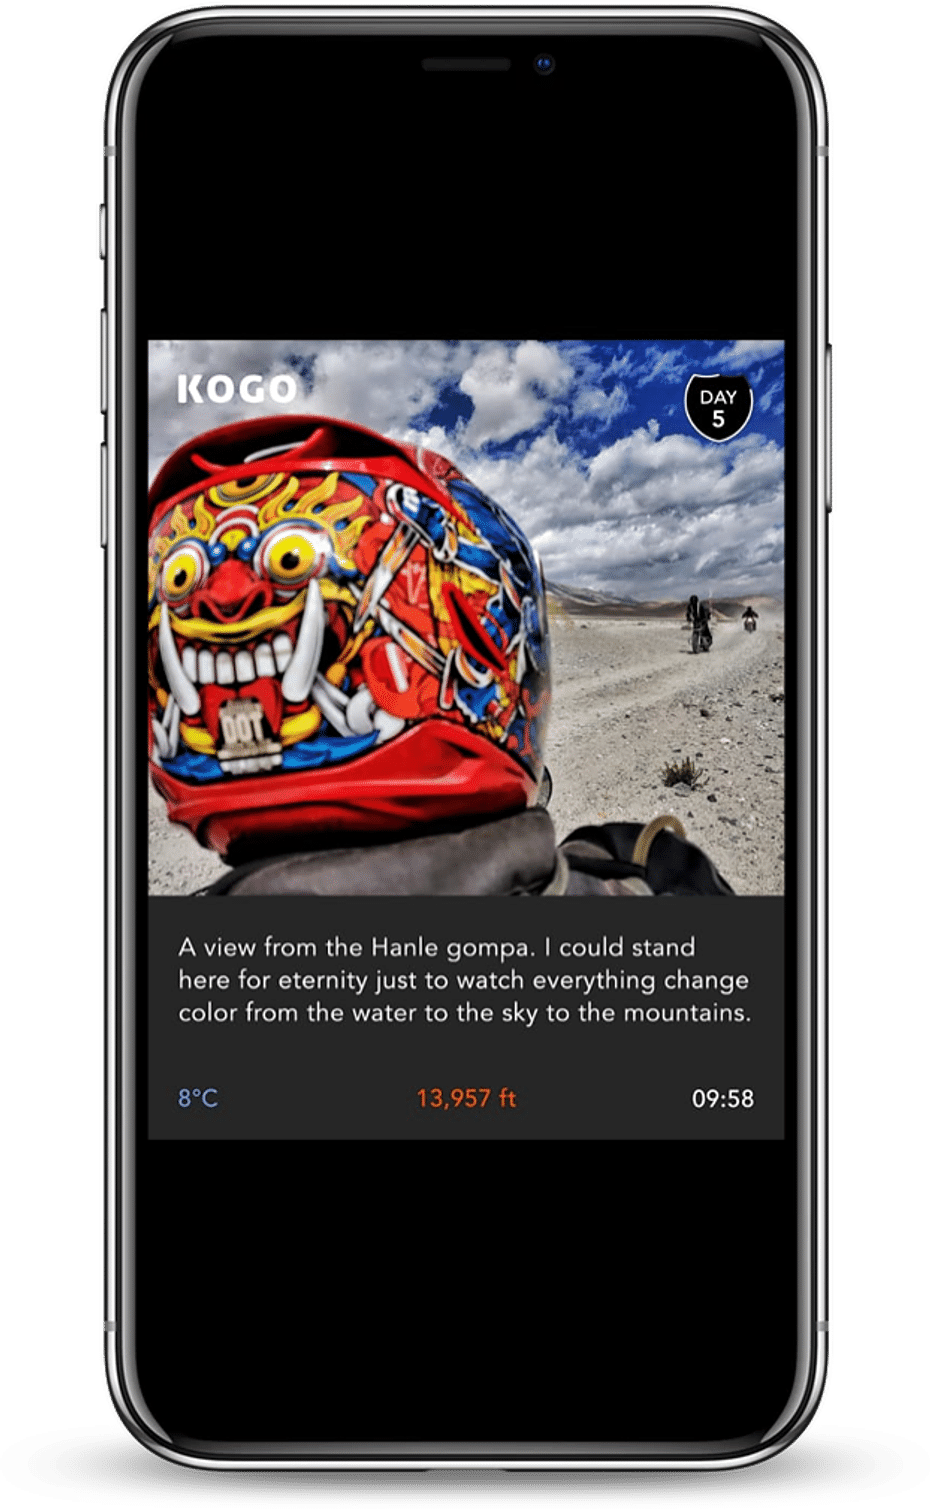 Kogo app day post